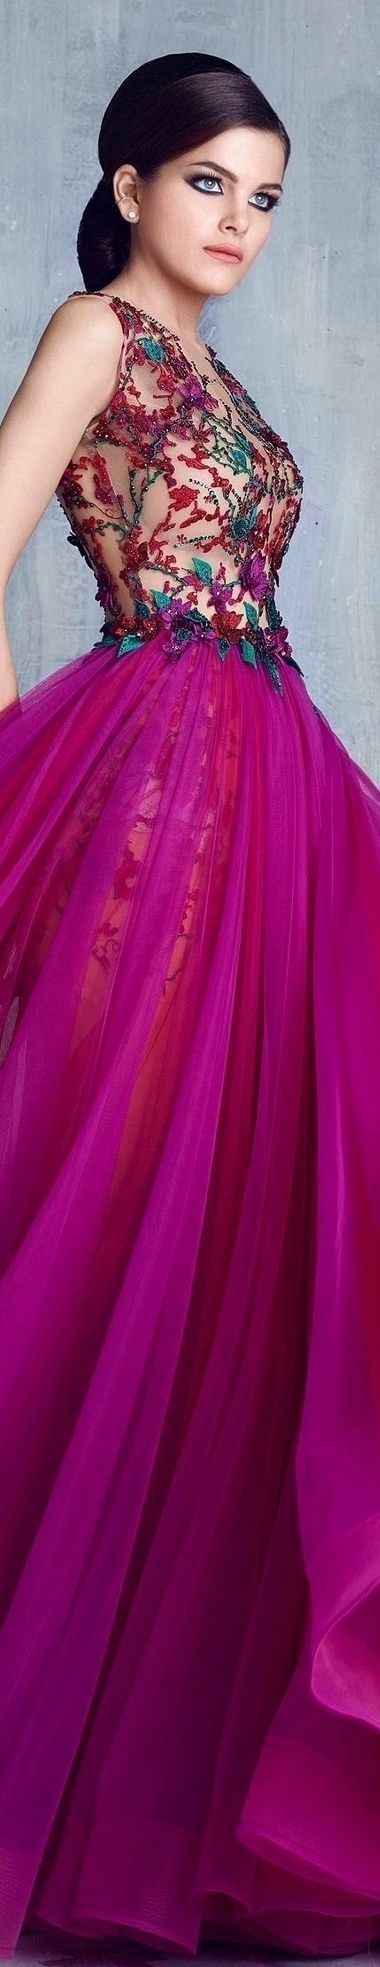 فستان خطوبة باللون الفوشيا والورود